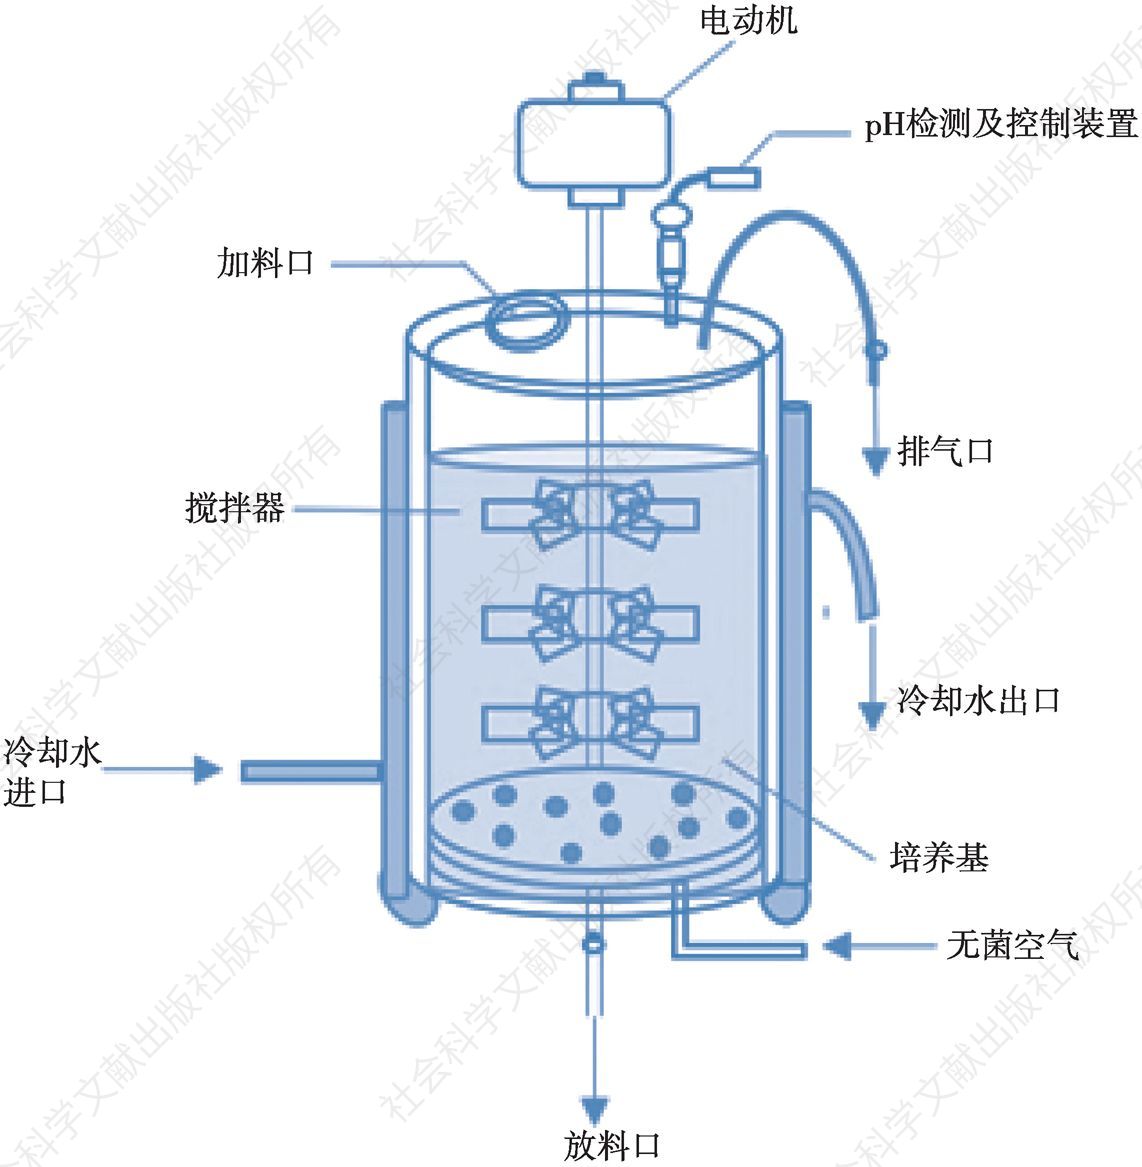 图4-7 发酵罐结构